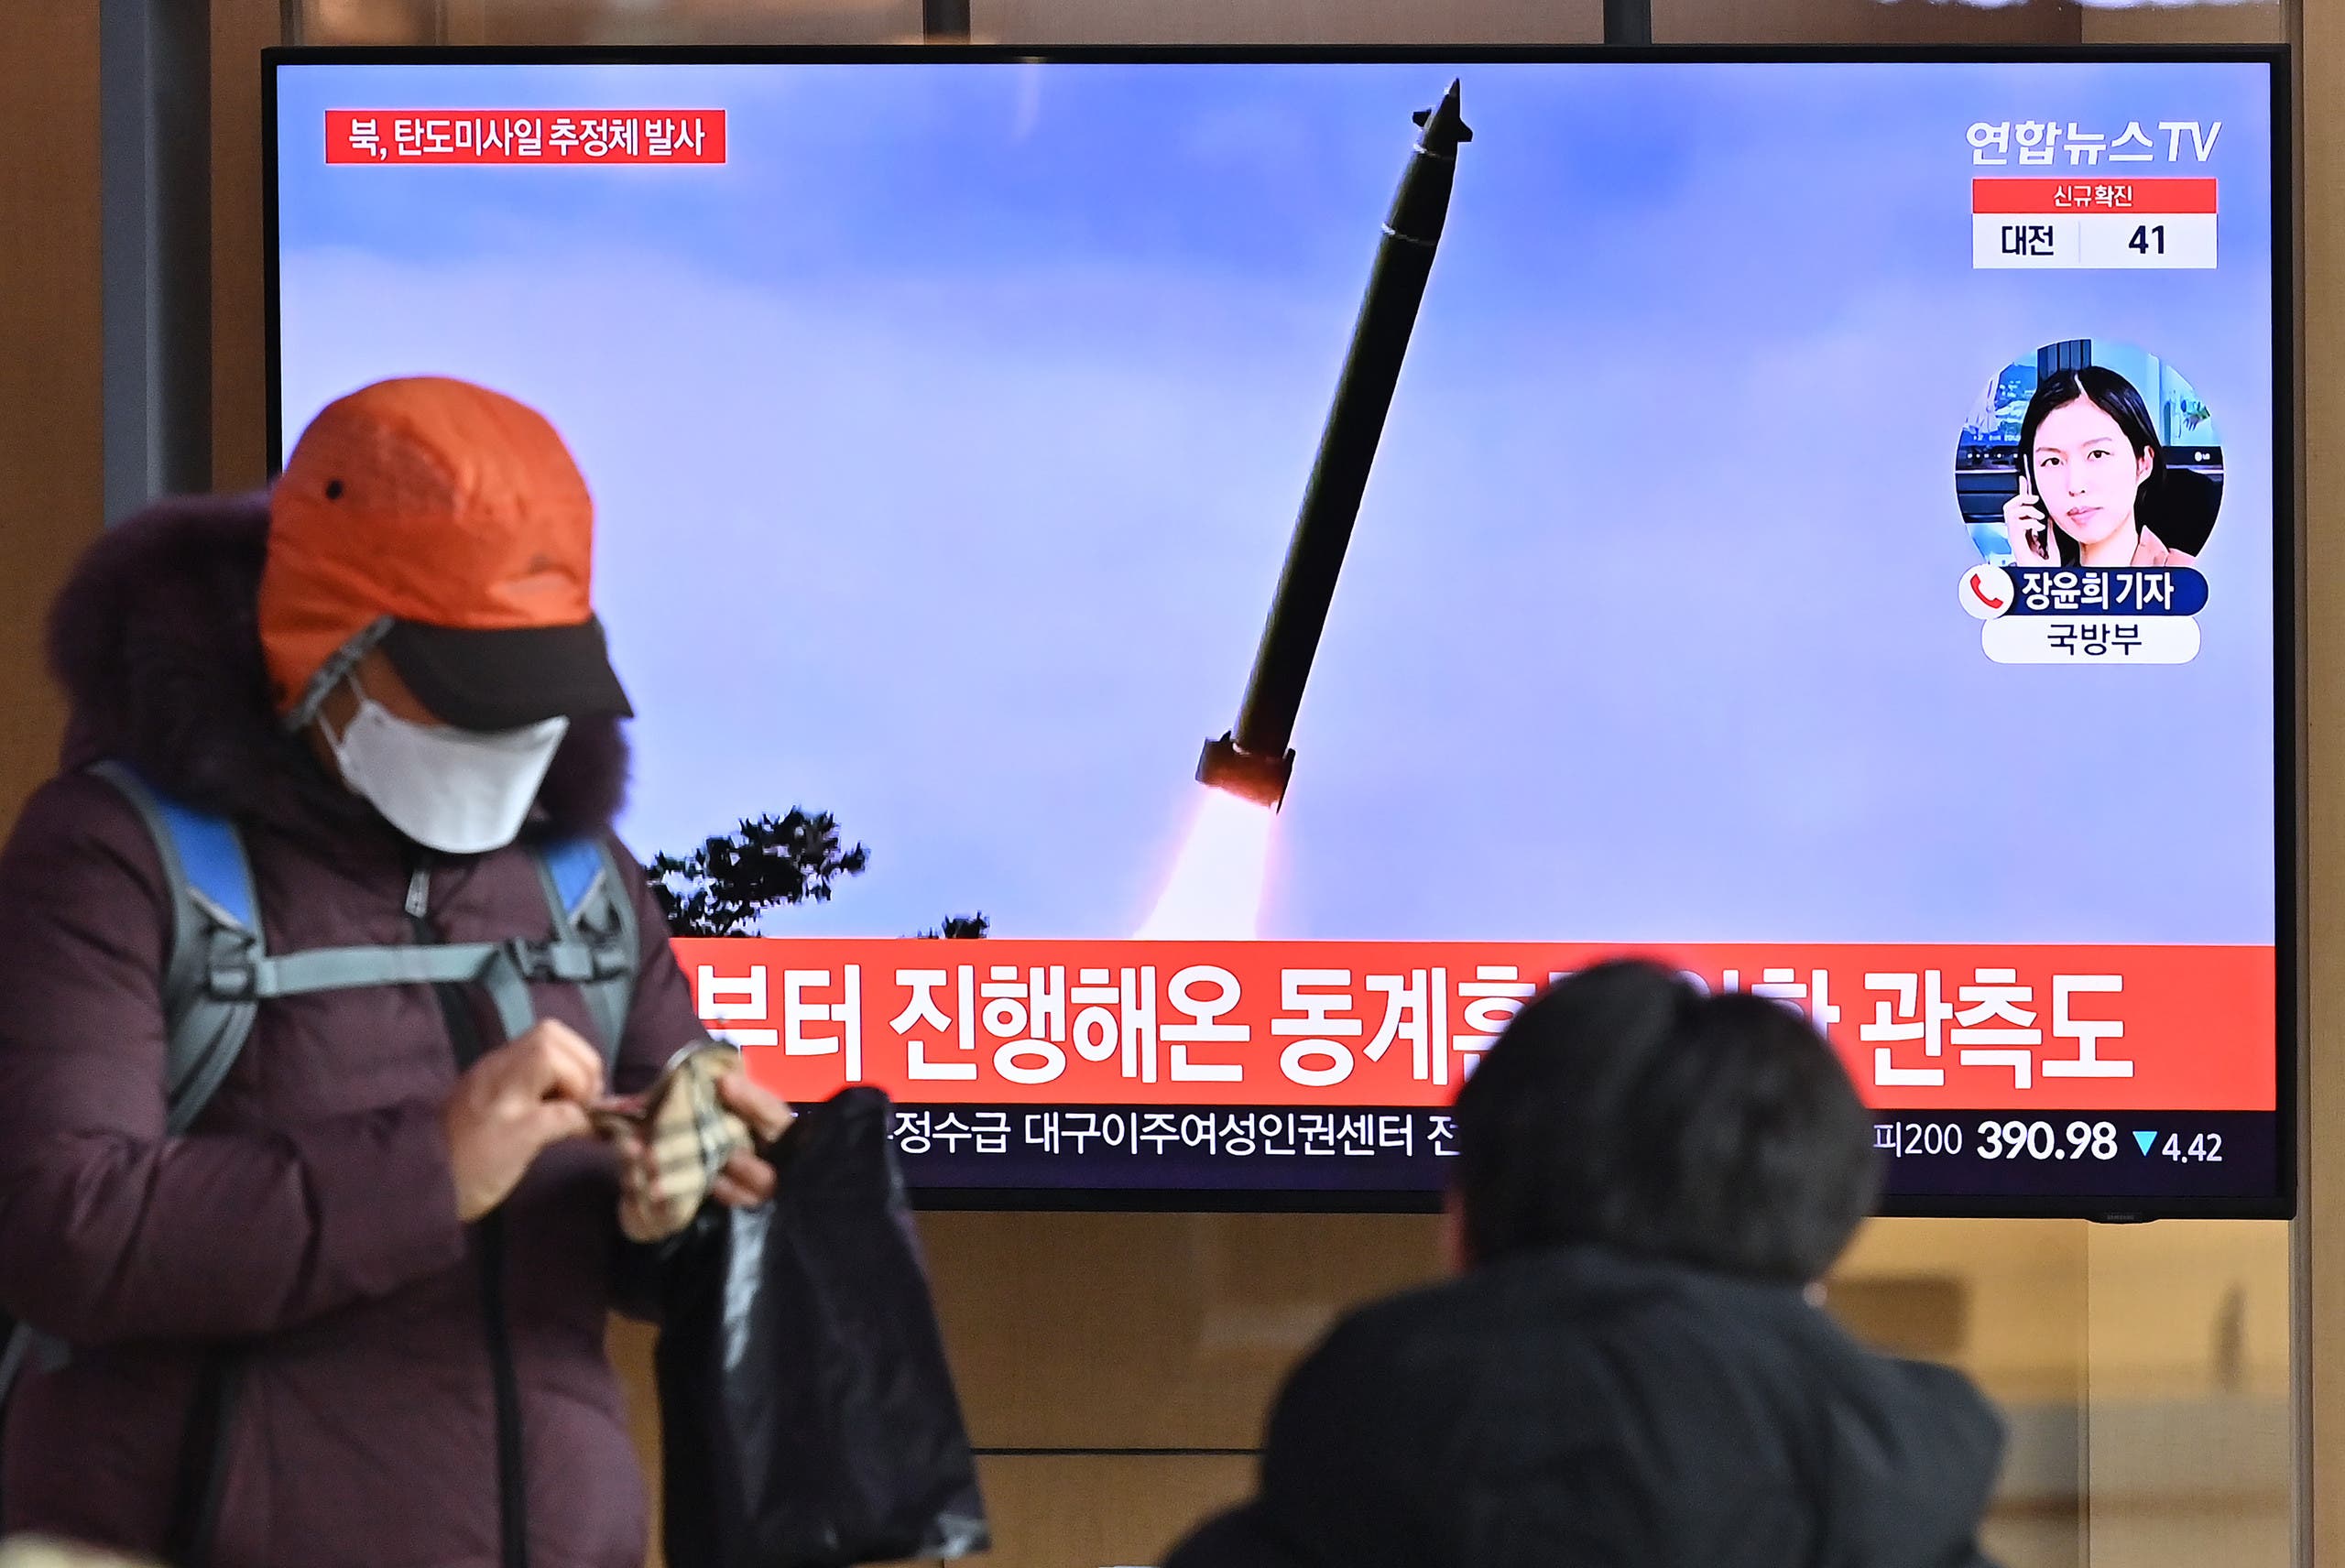 مارة أمام شاشات في سيول تظهر عملية إطلاق الصاروخ في كوريا الشمالية